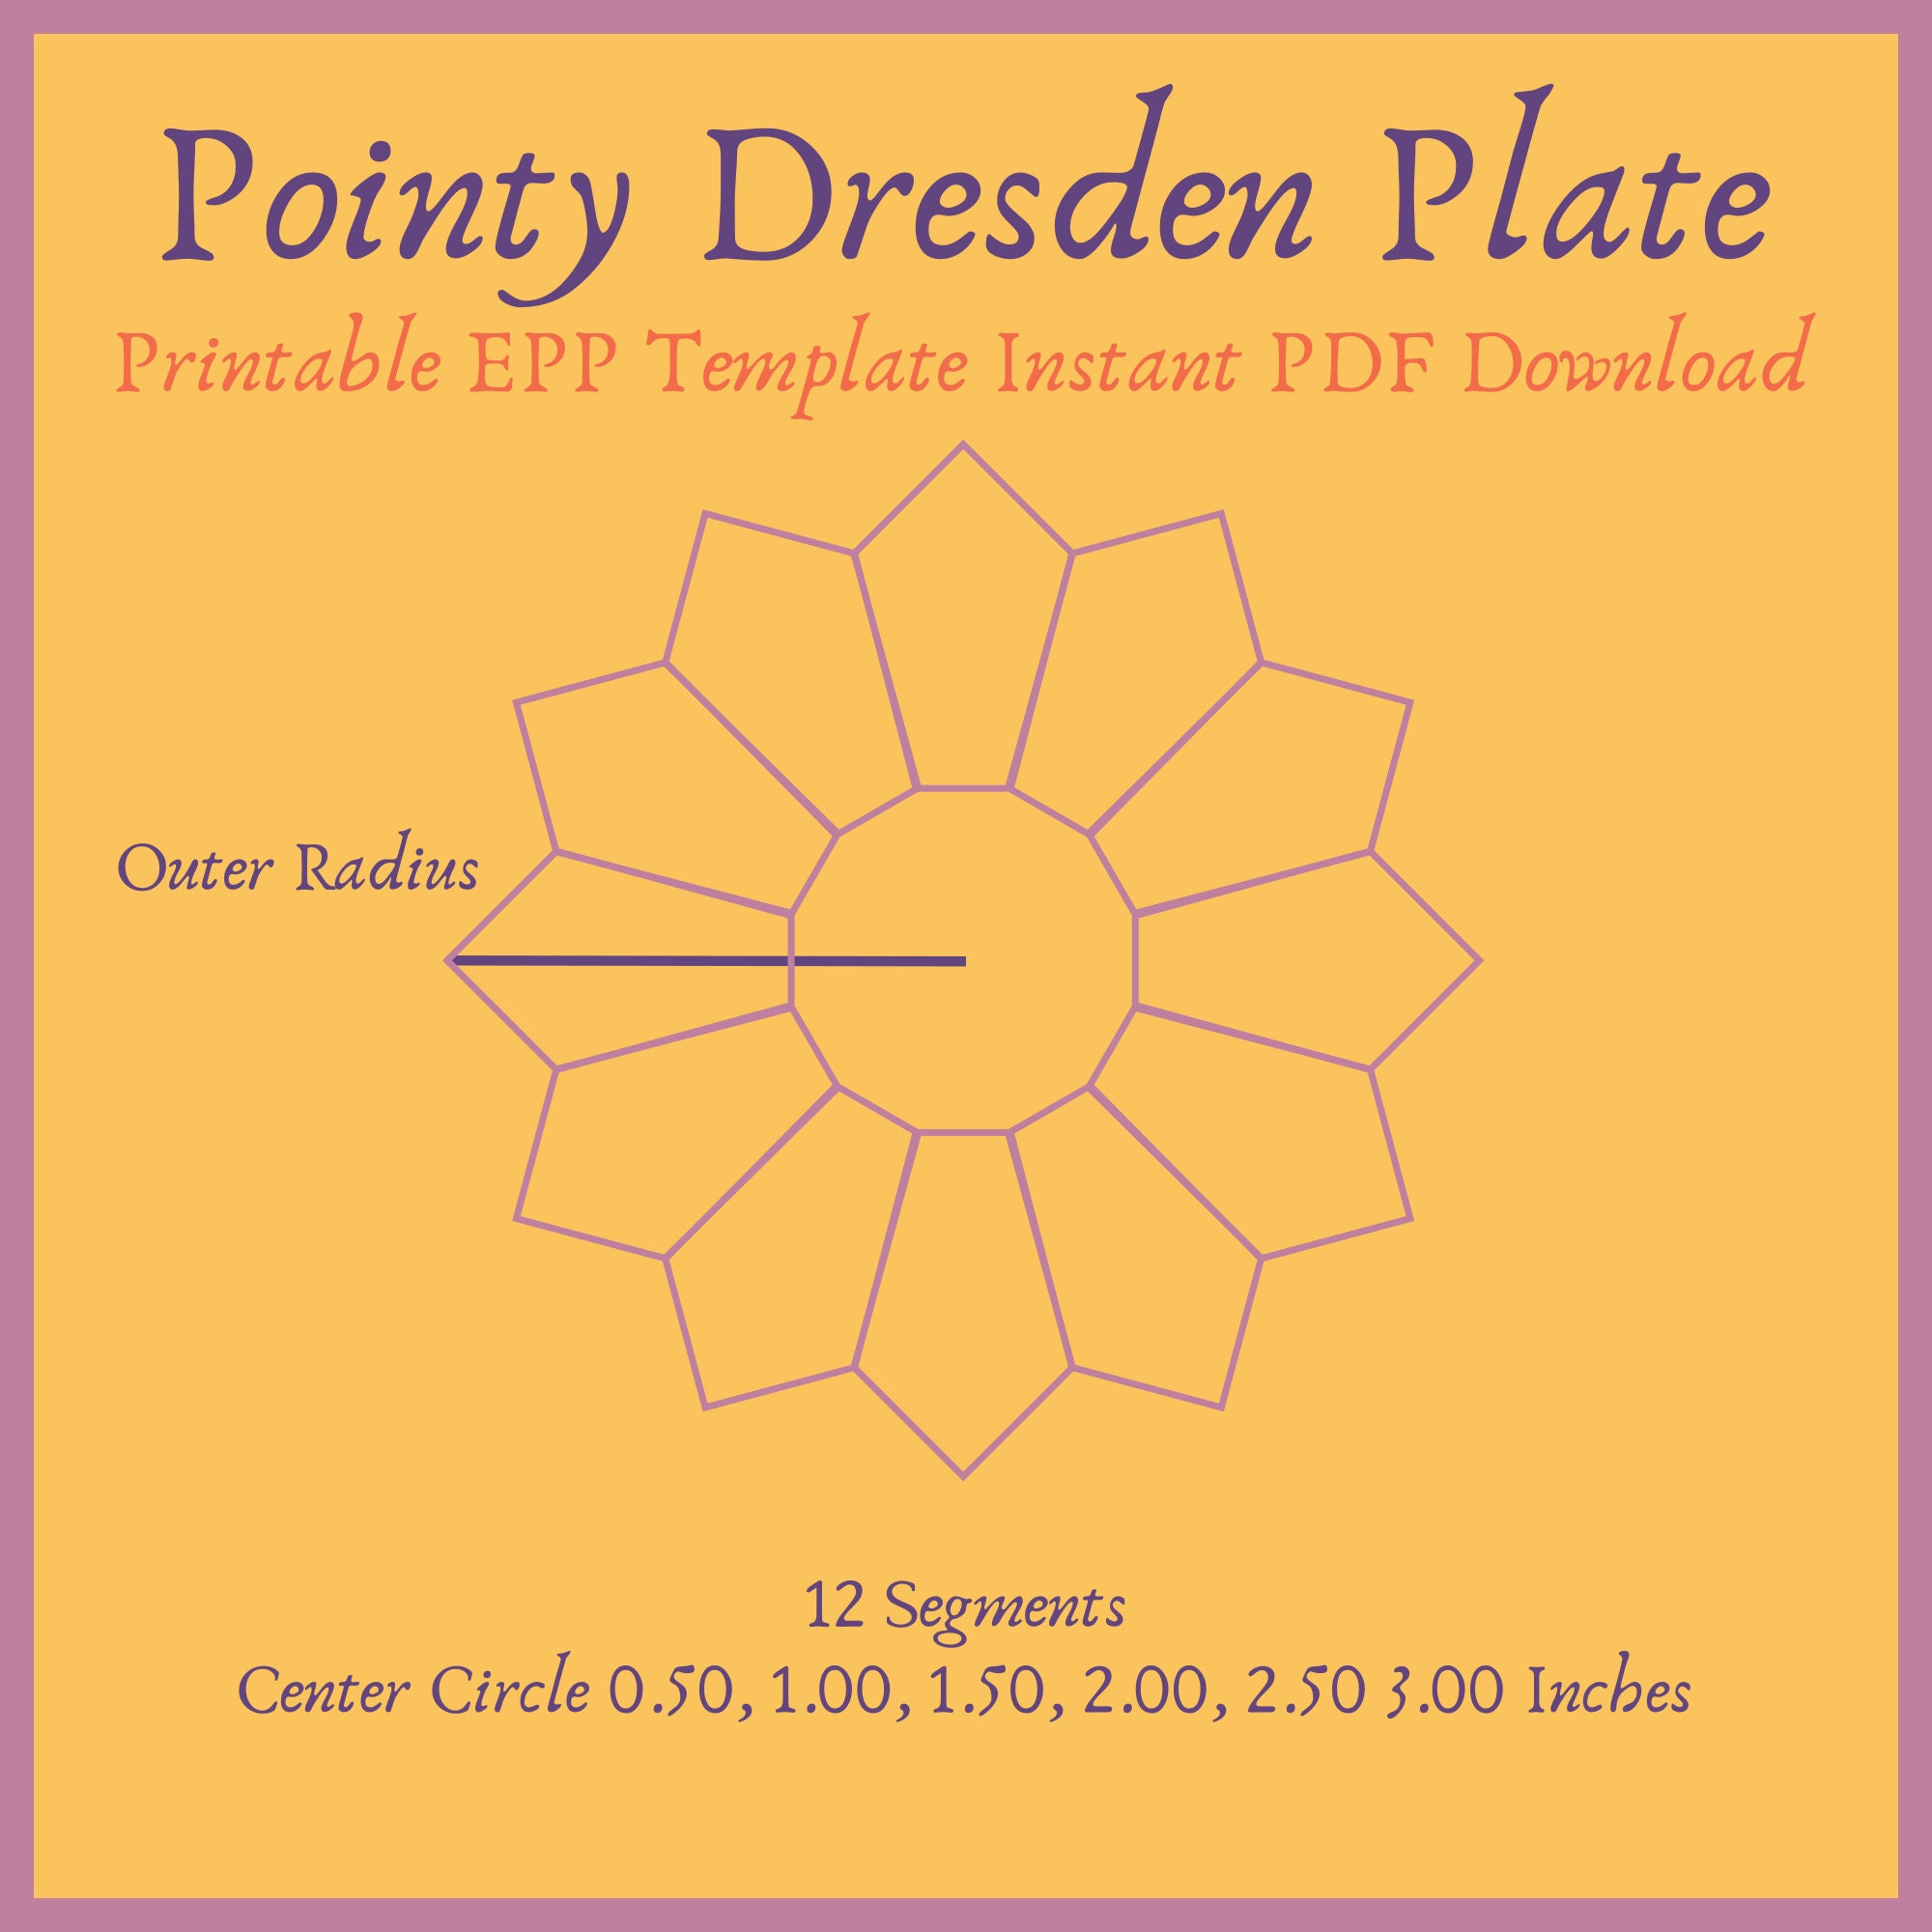 Dresden Plate Appliqué PDF